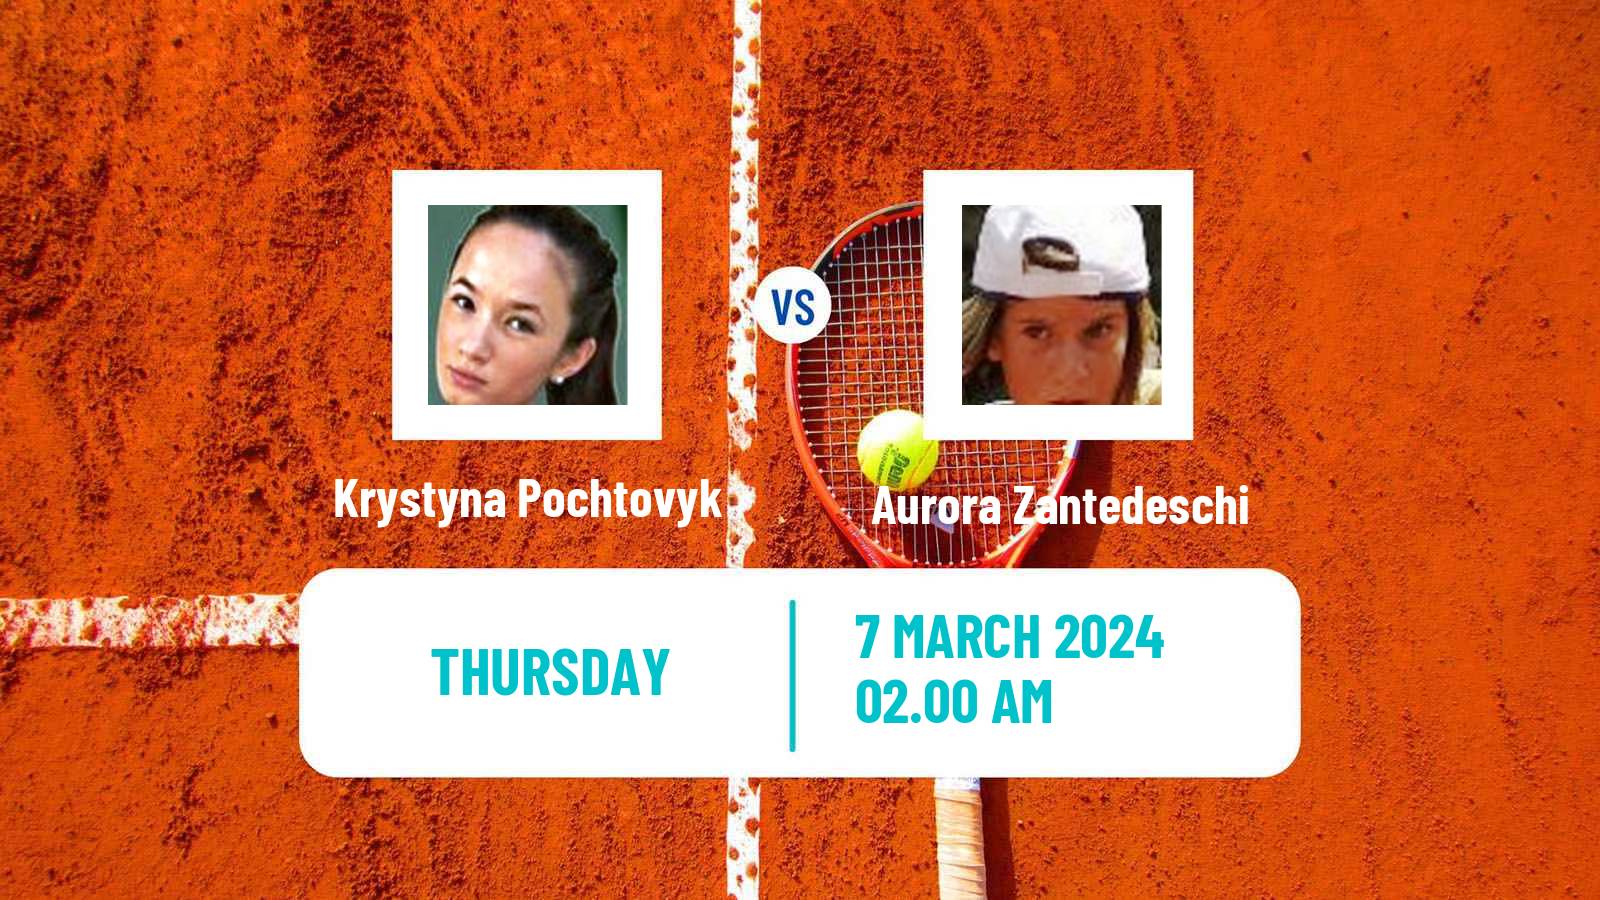 Tennis ITF W15 Antalya 4 Women Krystyna Pochtovyk - Aurora Zantedeschi